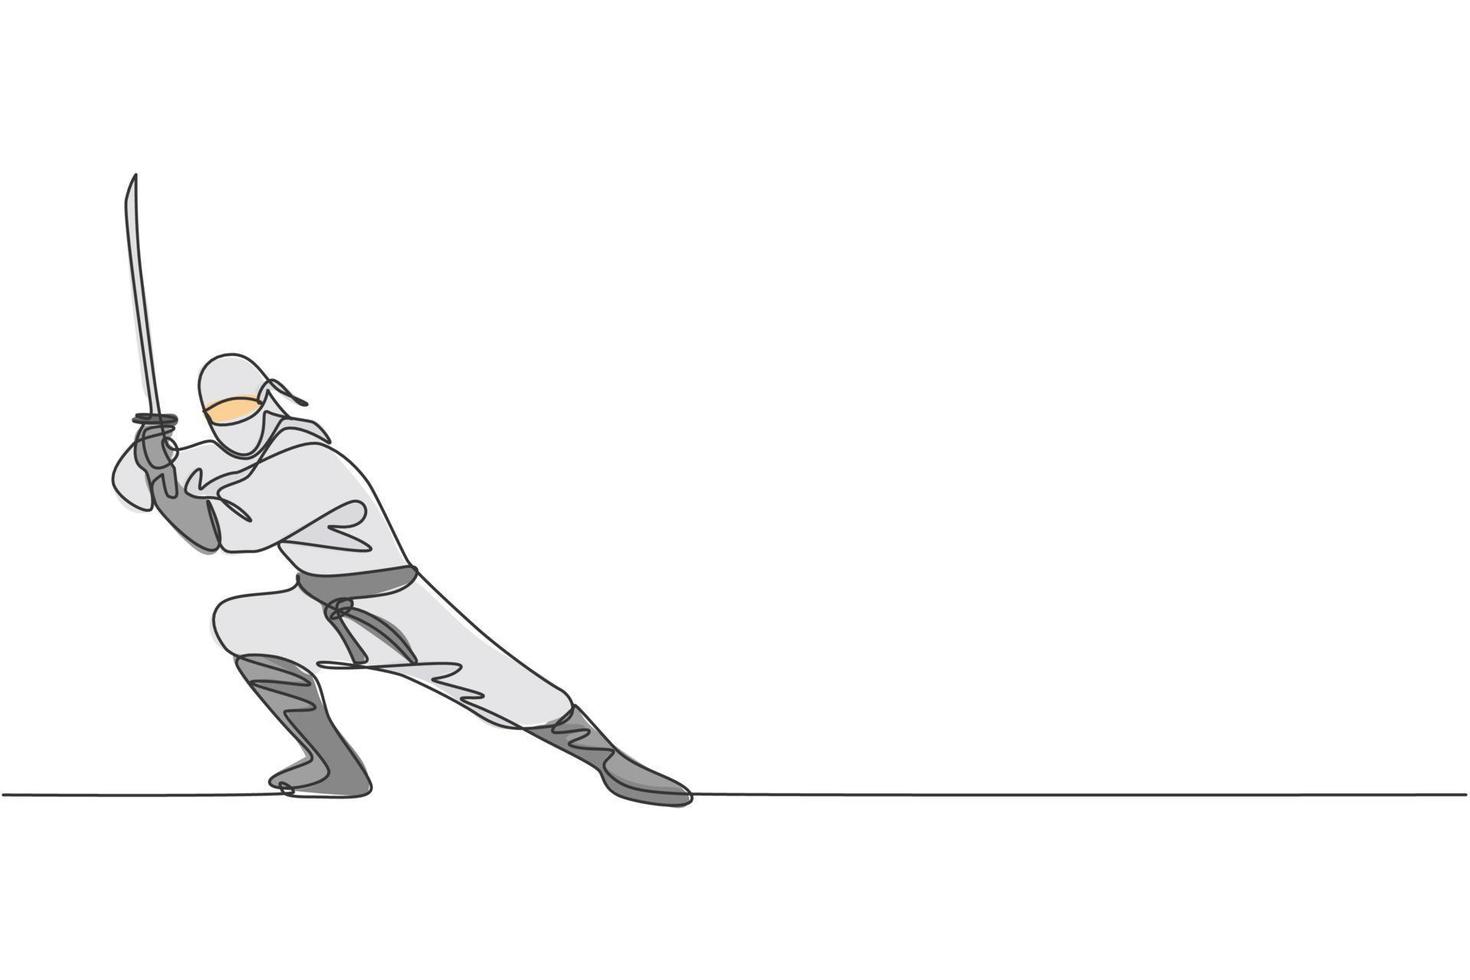 dibujo de una sola línea continua de un joven guerrero ninja de la cultura japonesa disfrazado de máscara con pose de posición de ataque. concepto de samurai de lucha de artes marciales. ilustración de vector de diseño de dibujo de una línea de moda